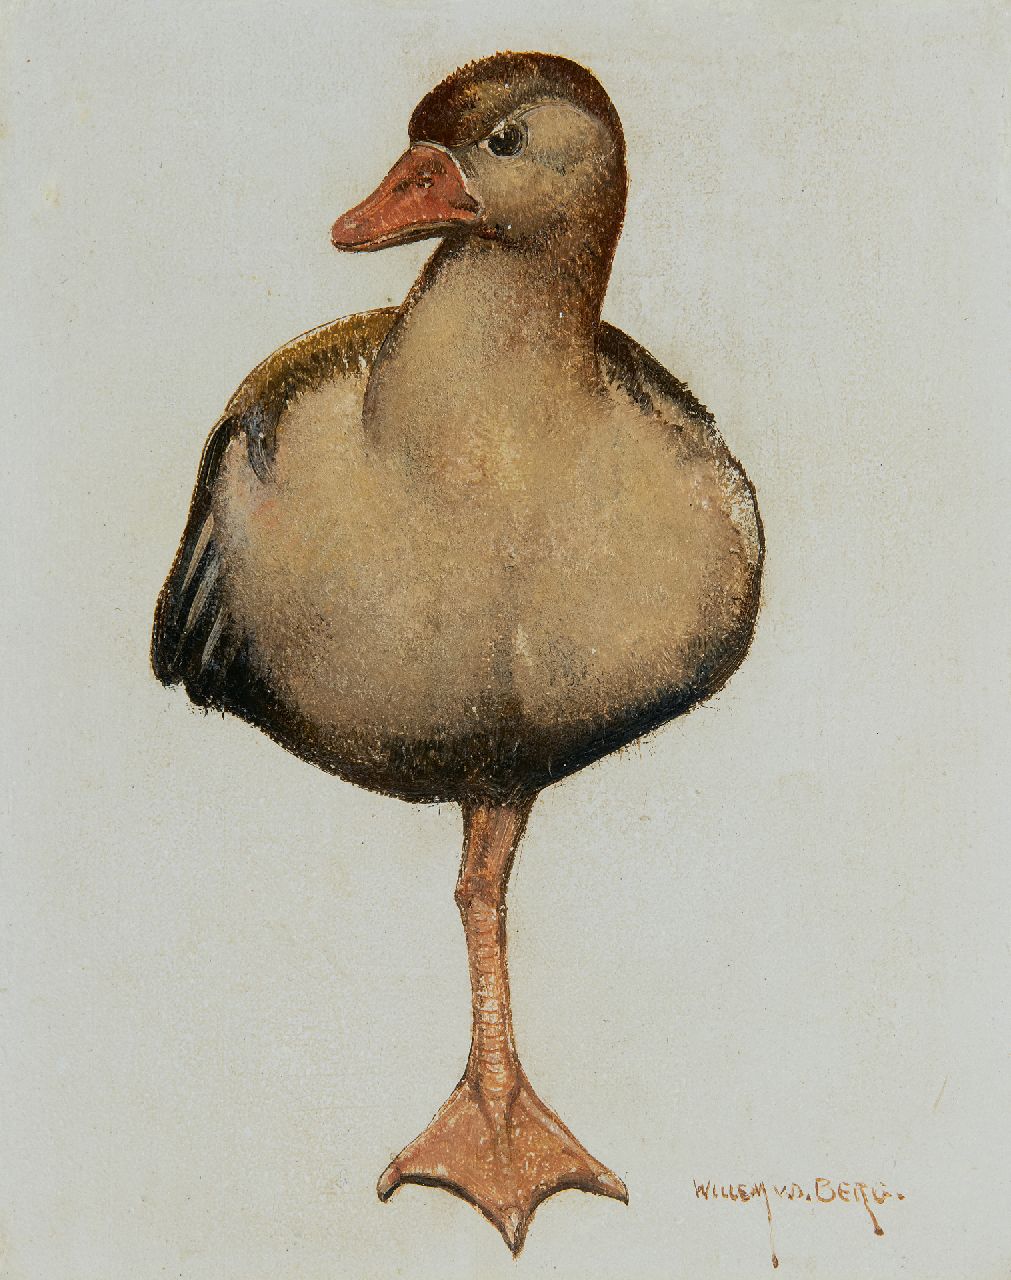 Berg W.H. van den | 'Willem' Hendrik van den Berg | Gemälde zum Verkauf angeboten | Ruhende Ente, Öl auf Holz 16,5 x 13,6 cm, Unterzeichnet u.r.